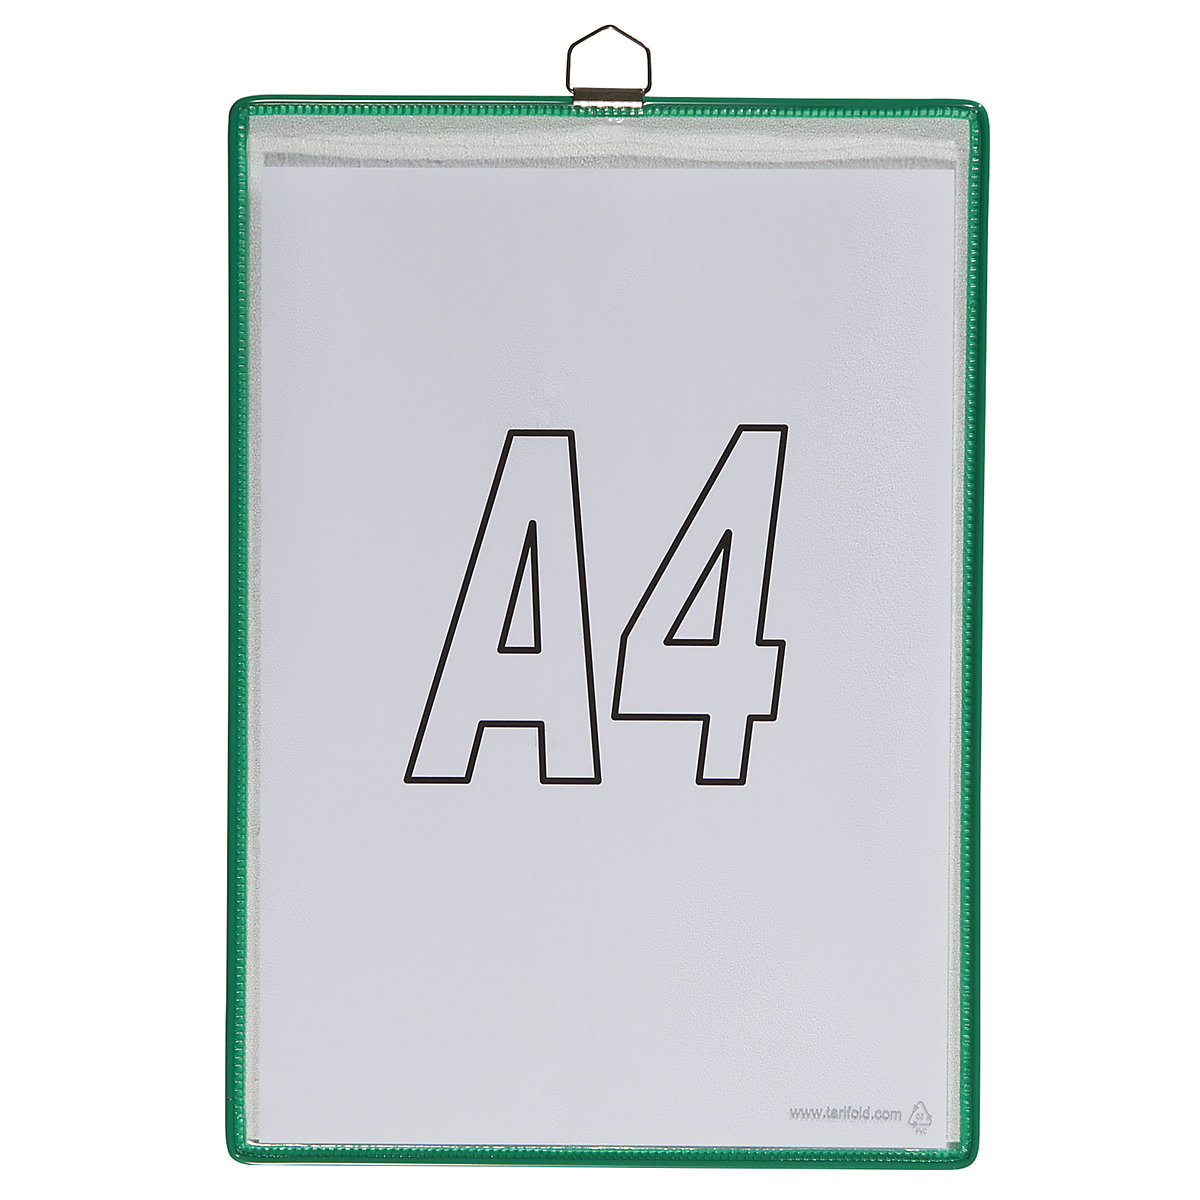 Pochette transparente à accrocher – Tarifold, pour format A4, coloris vert, lot de 10-3